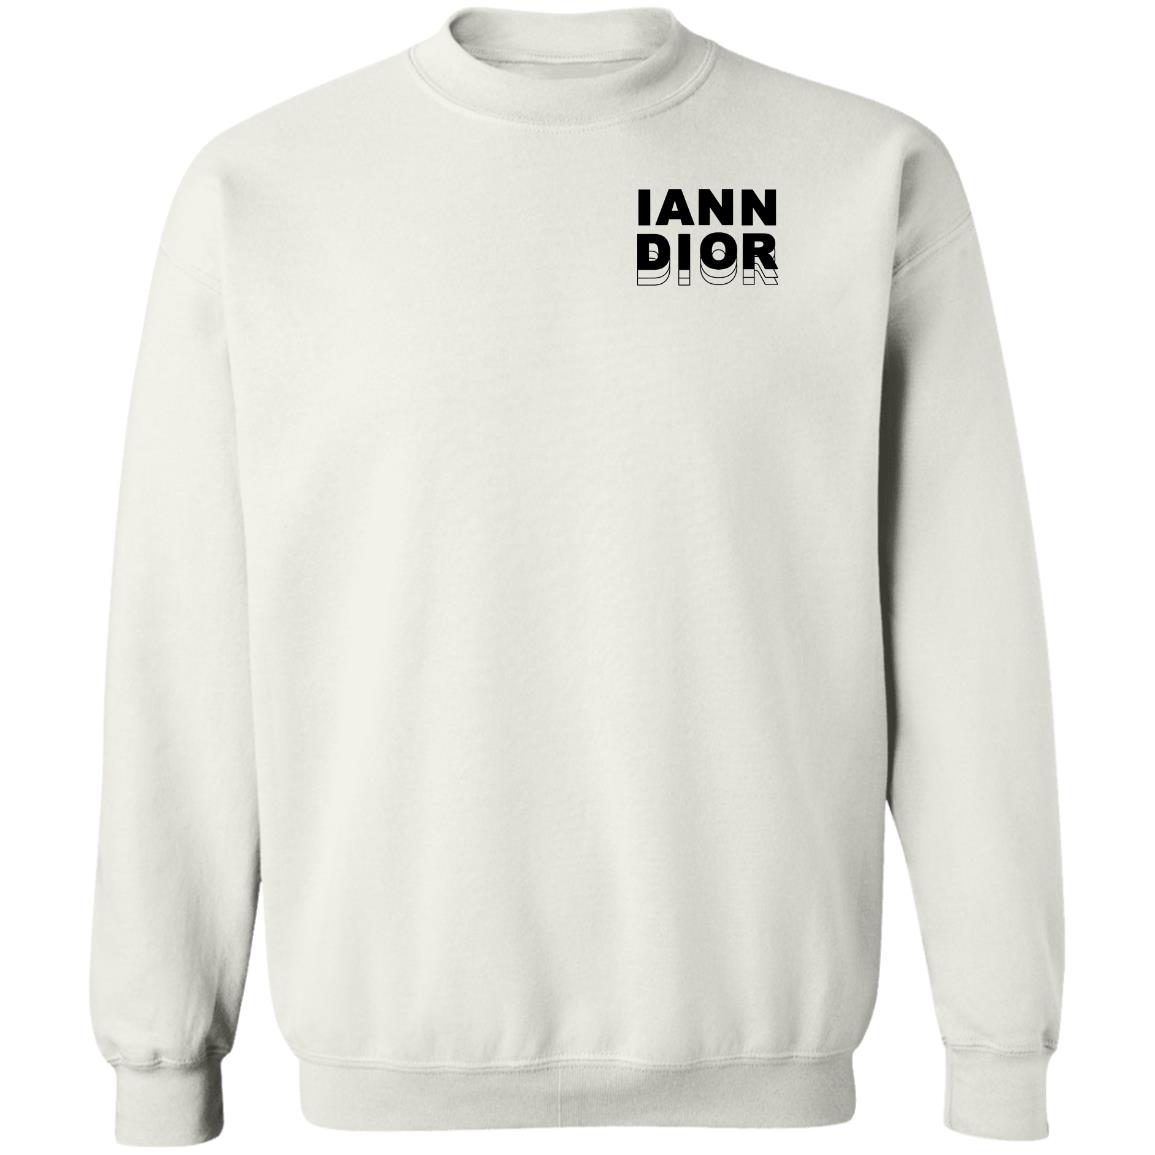 Iann Dior Cross T-Shirt – Iann Dior Merch